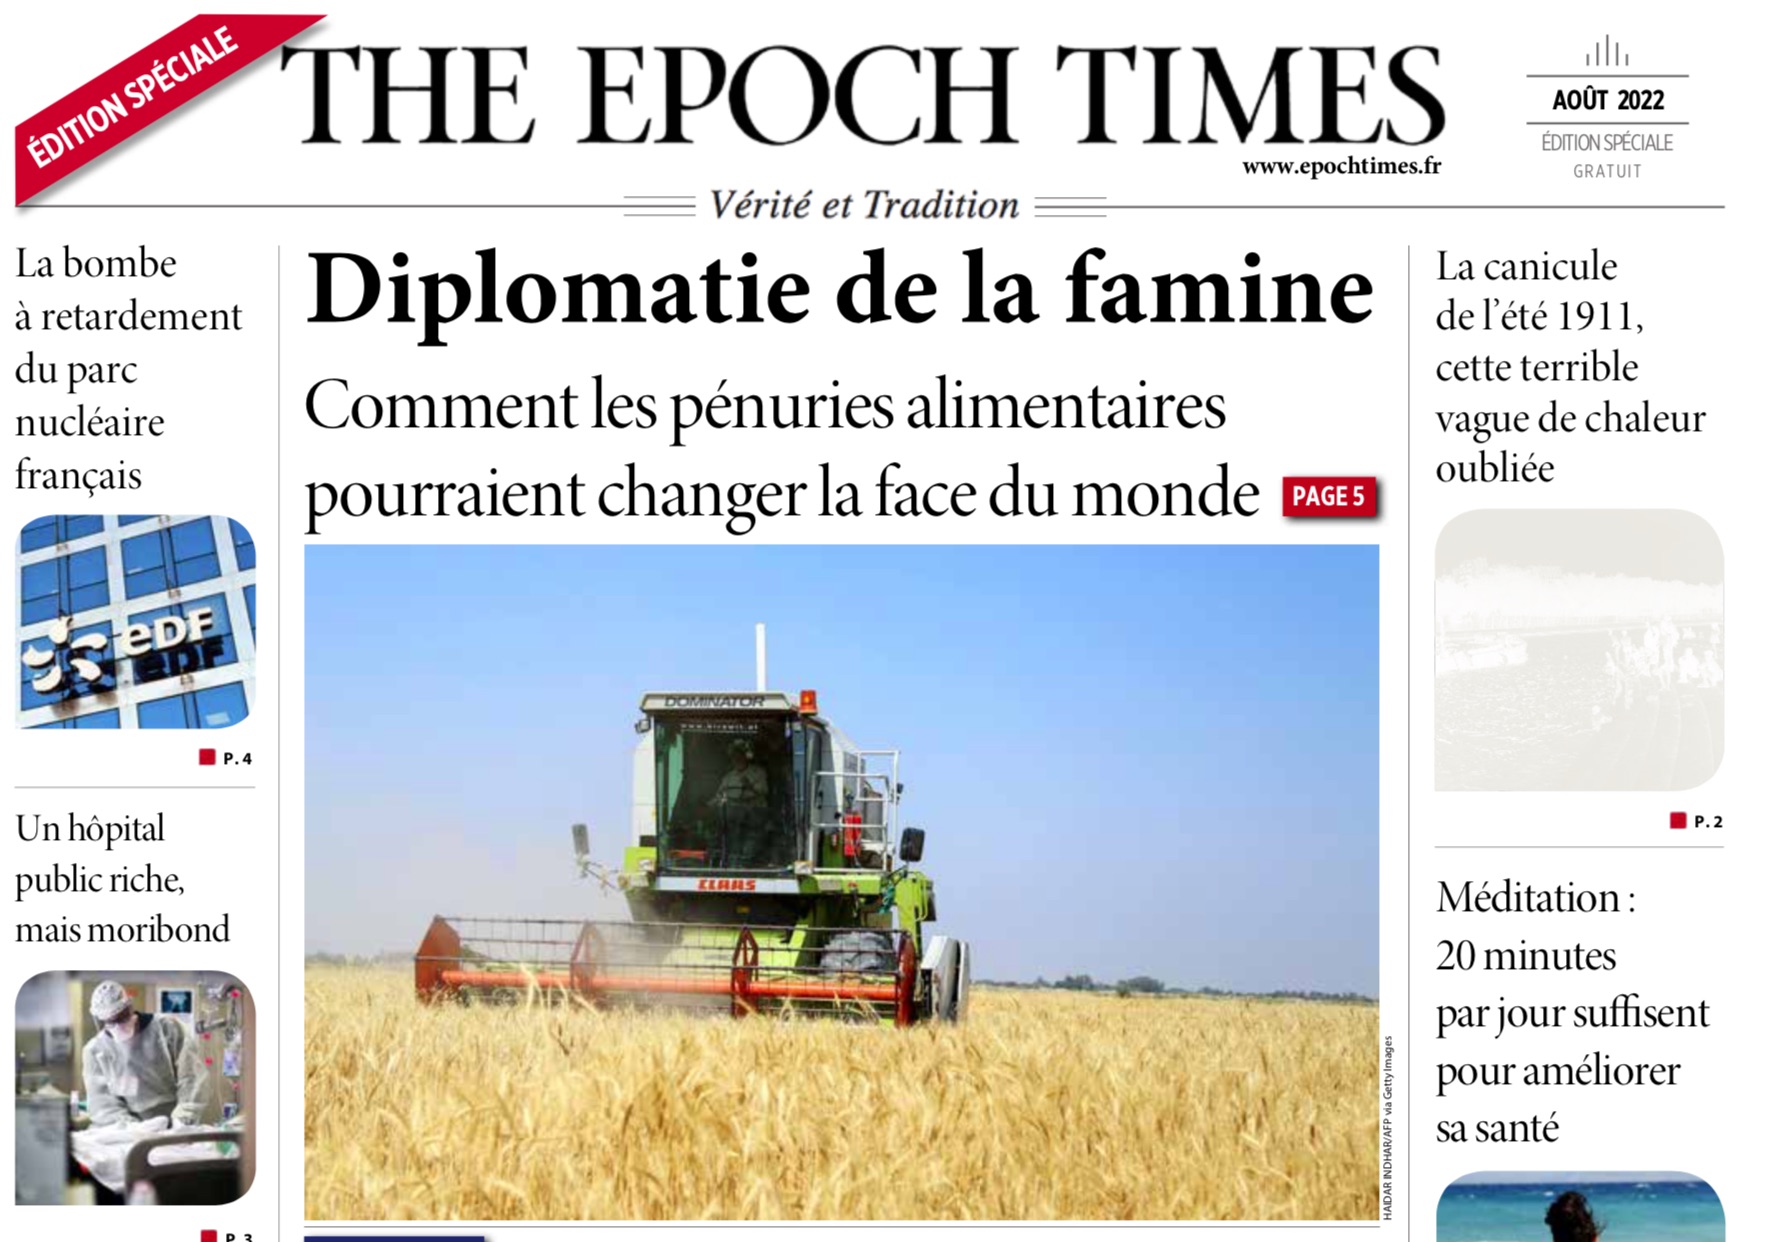 "Diplomatie de la famine" - Nouvelle édition spéciale Epoch Times Août 2022